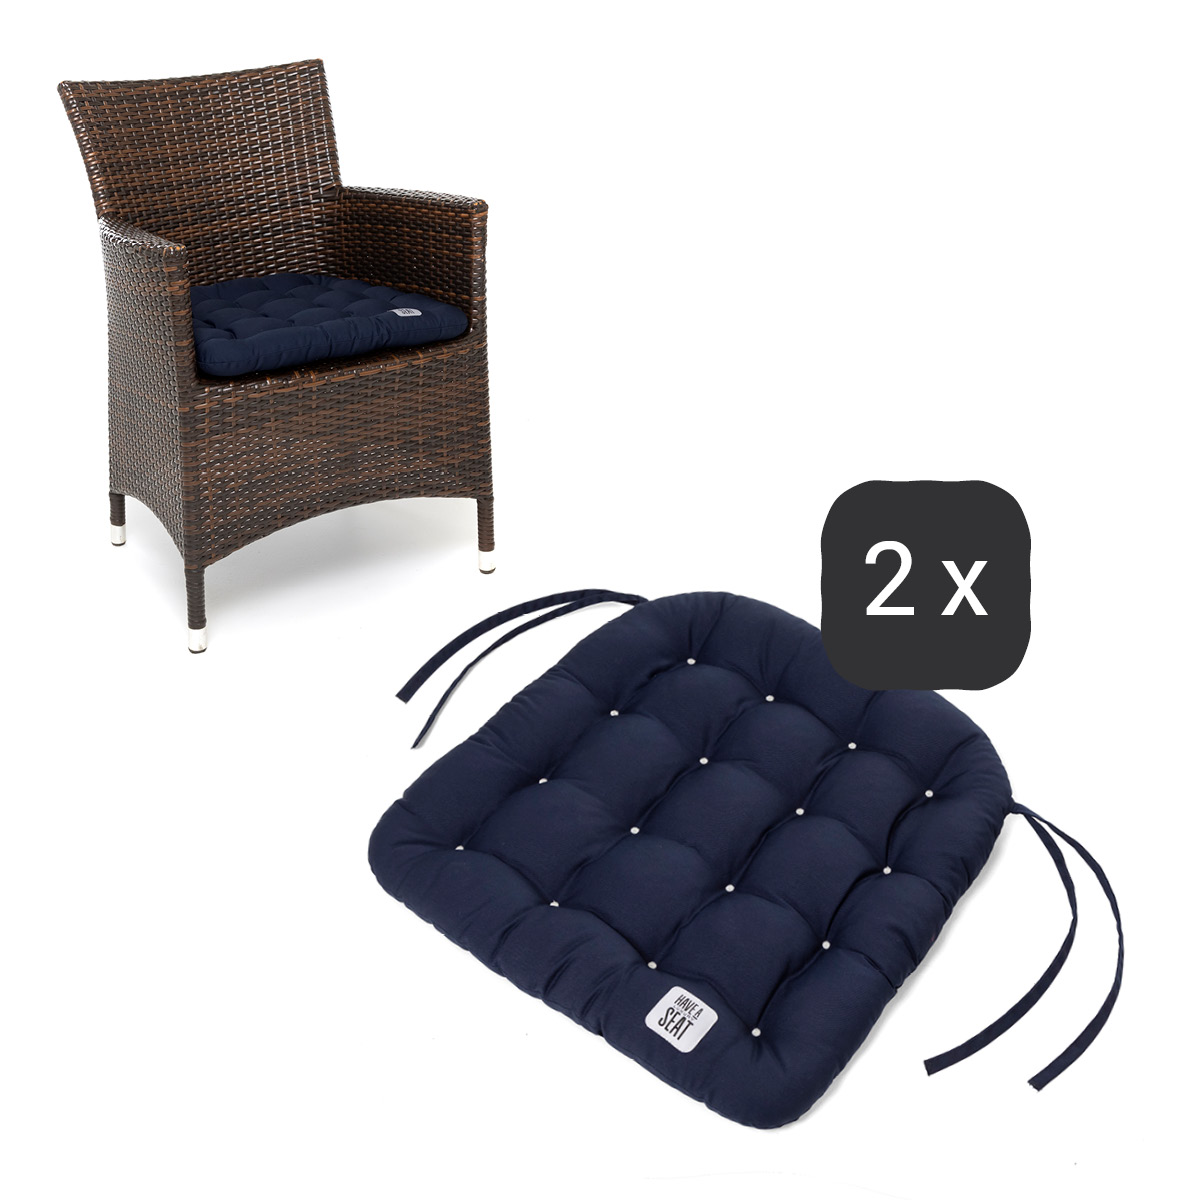 Sitzkissen für Rattanstühle 48x46 cm | Marine-Blau | 2er Set | Premium-Sitzkomfort | Indoor / Outdoor | waschbar bis 95°C | HAVE A SEAT Living